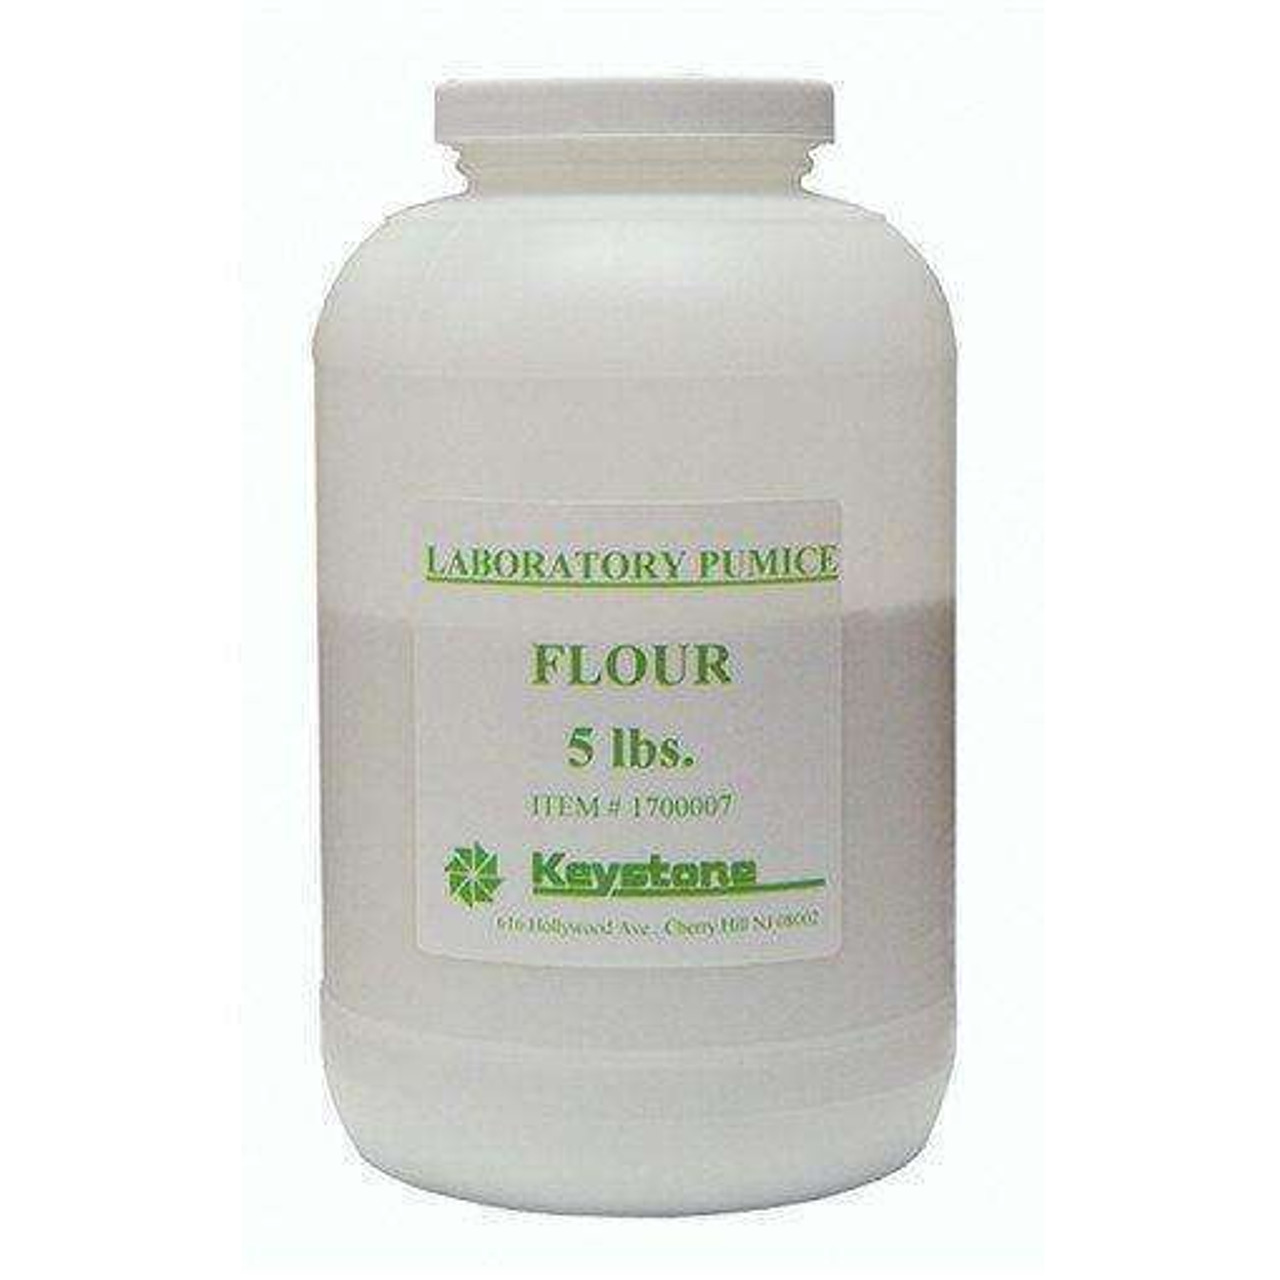 Laboratory Pumice Powder, Fine F, 5 lbs